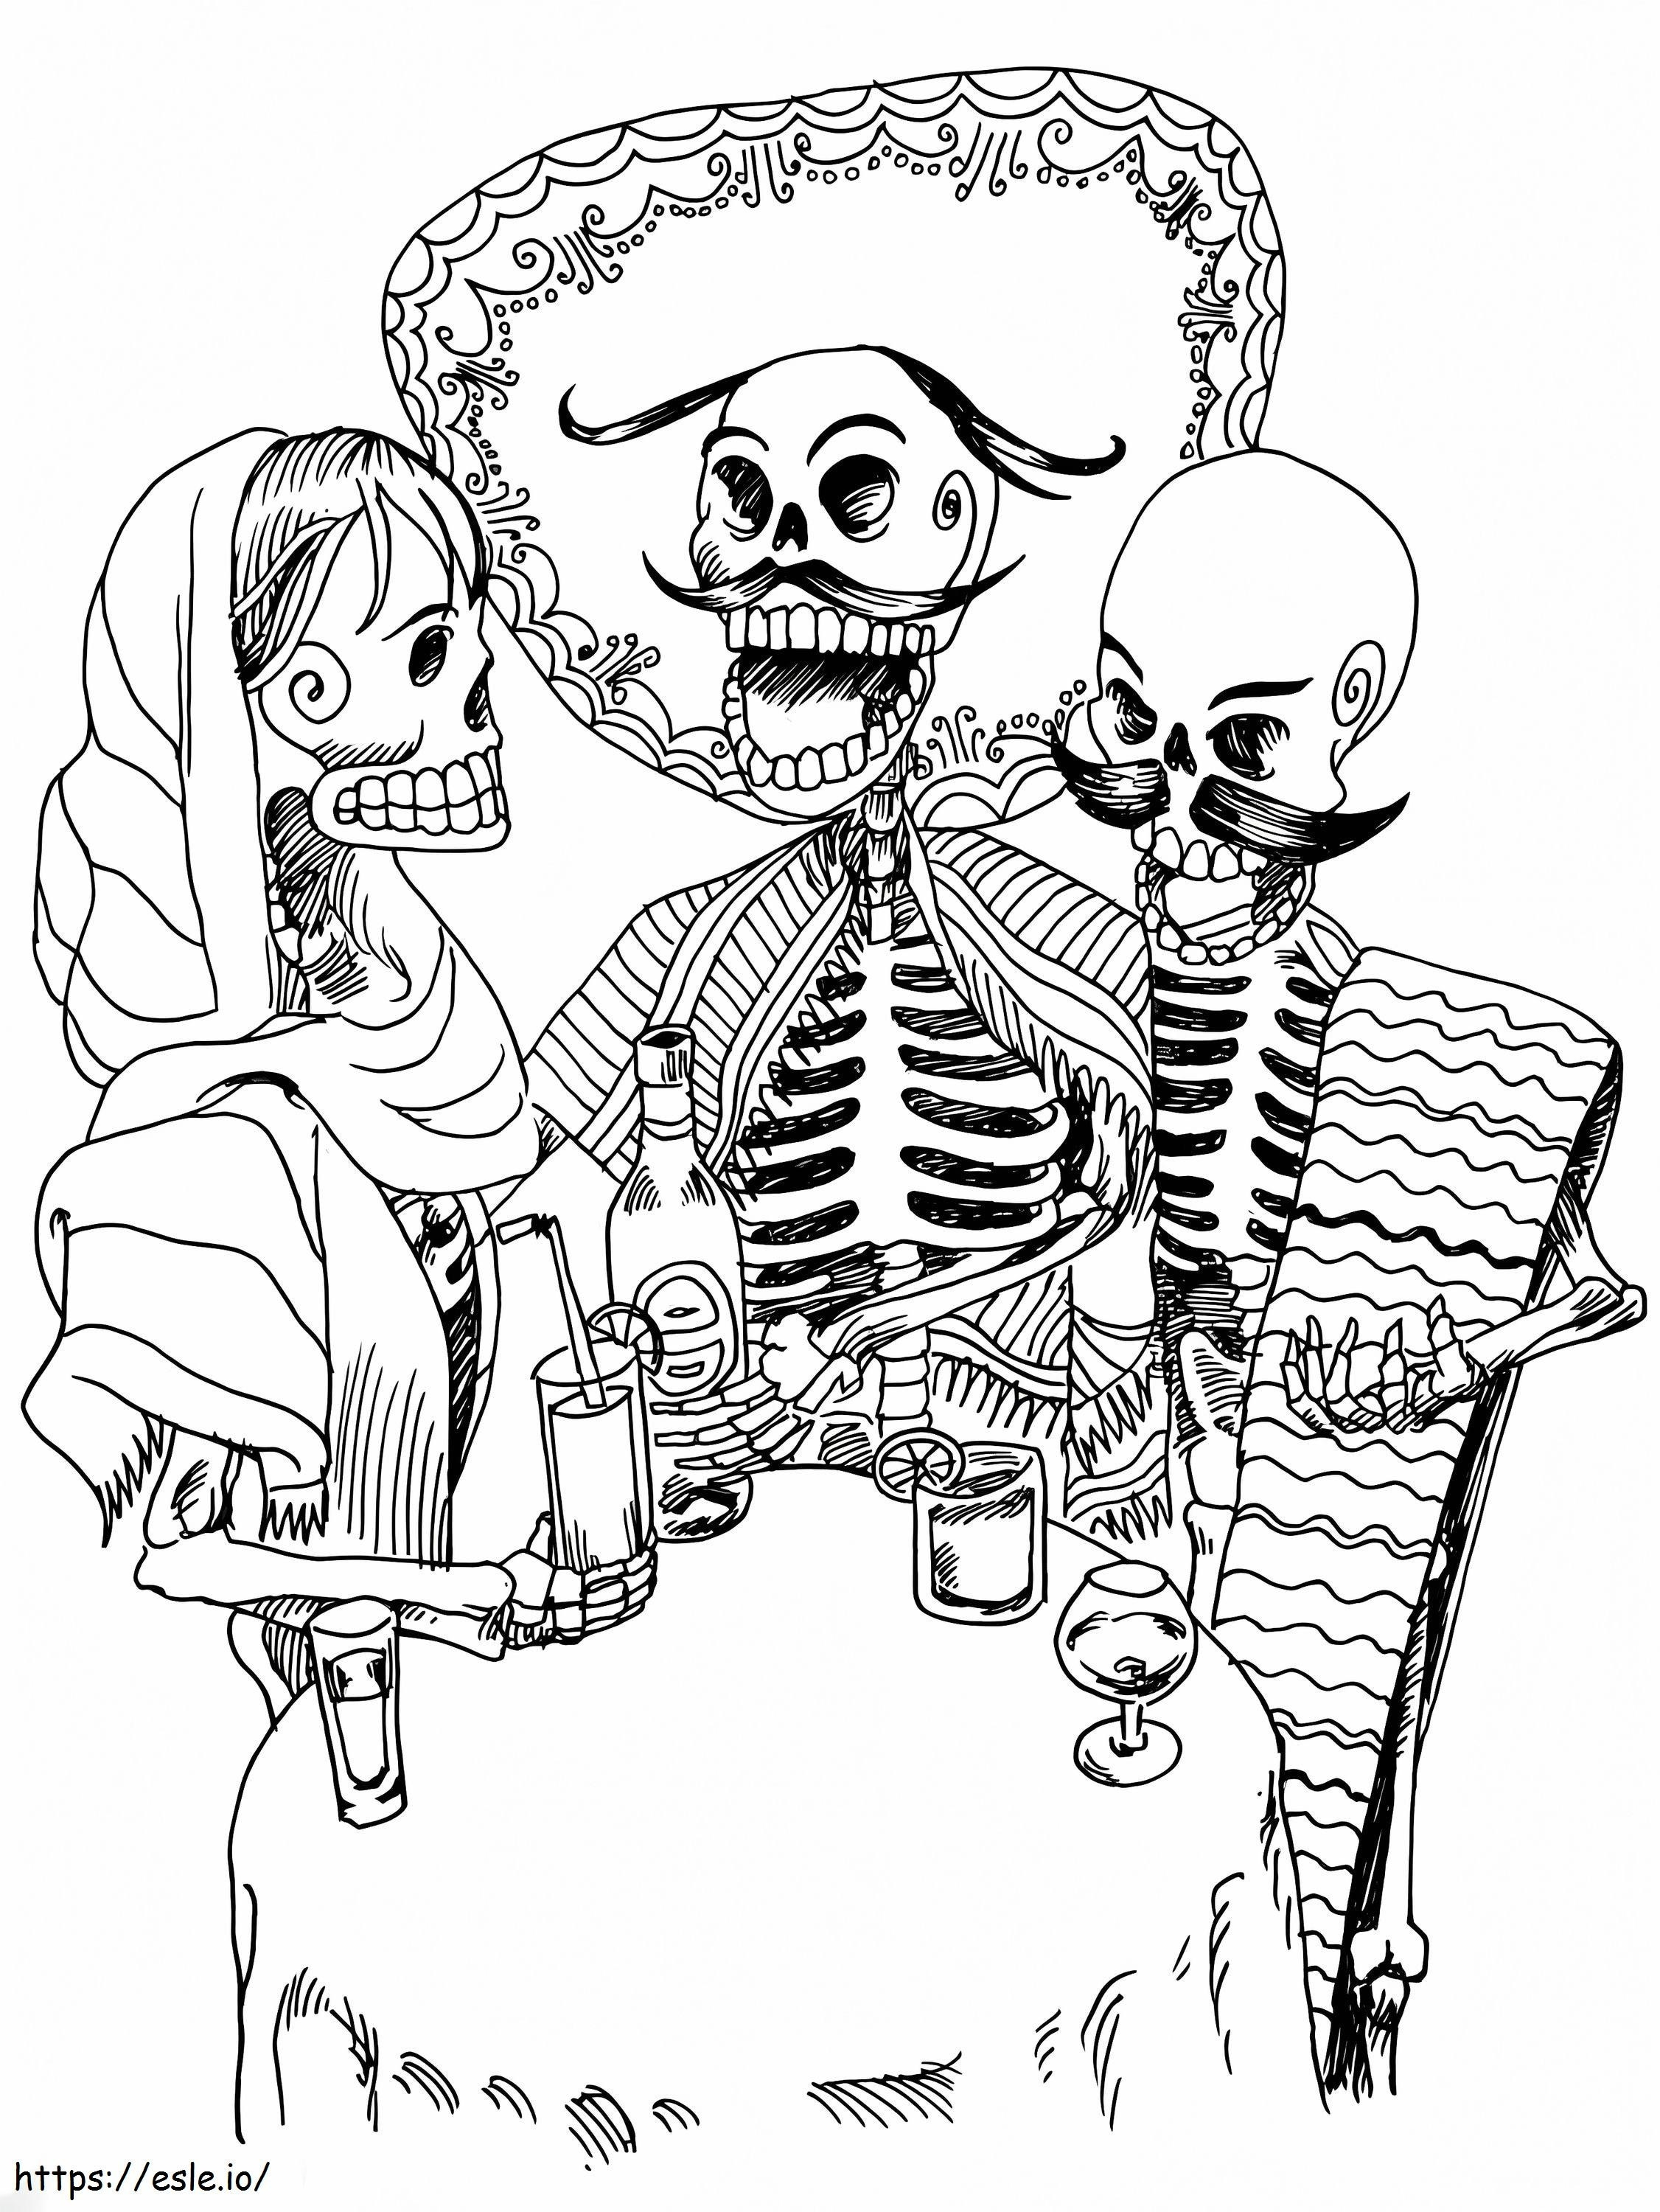 Esqueletos de terror para colorear